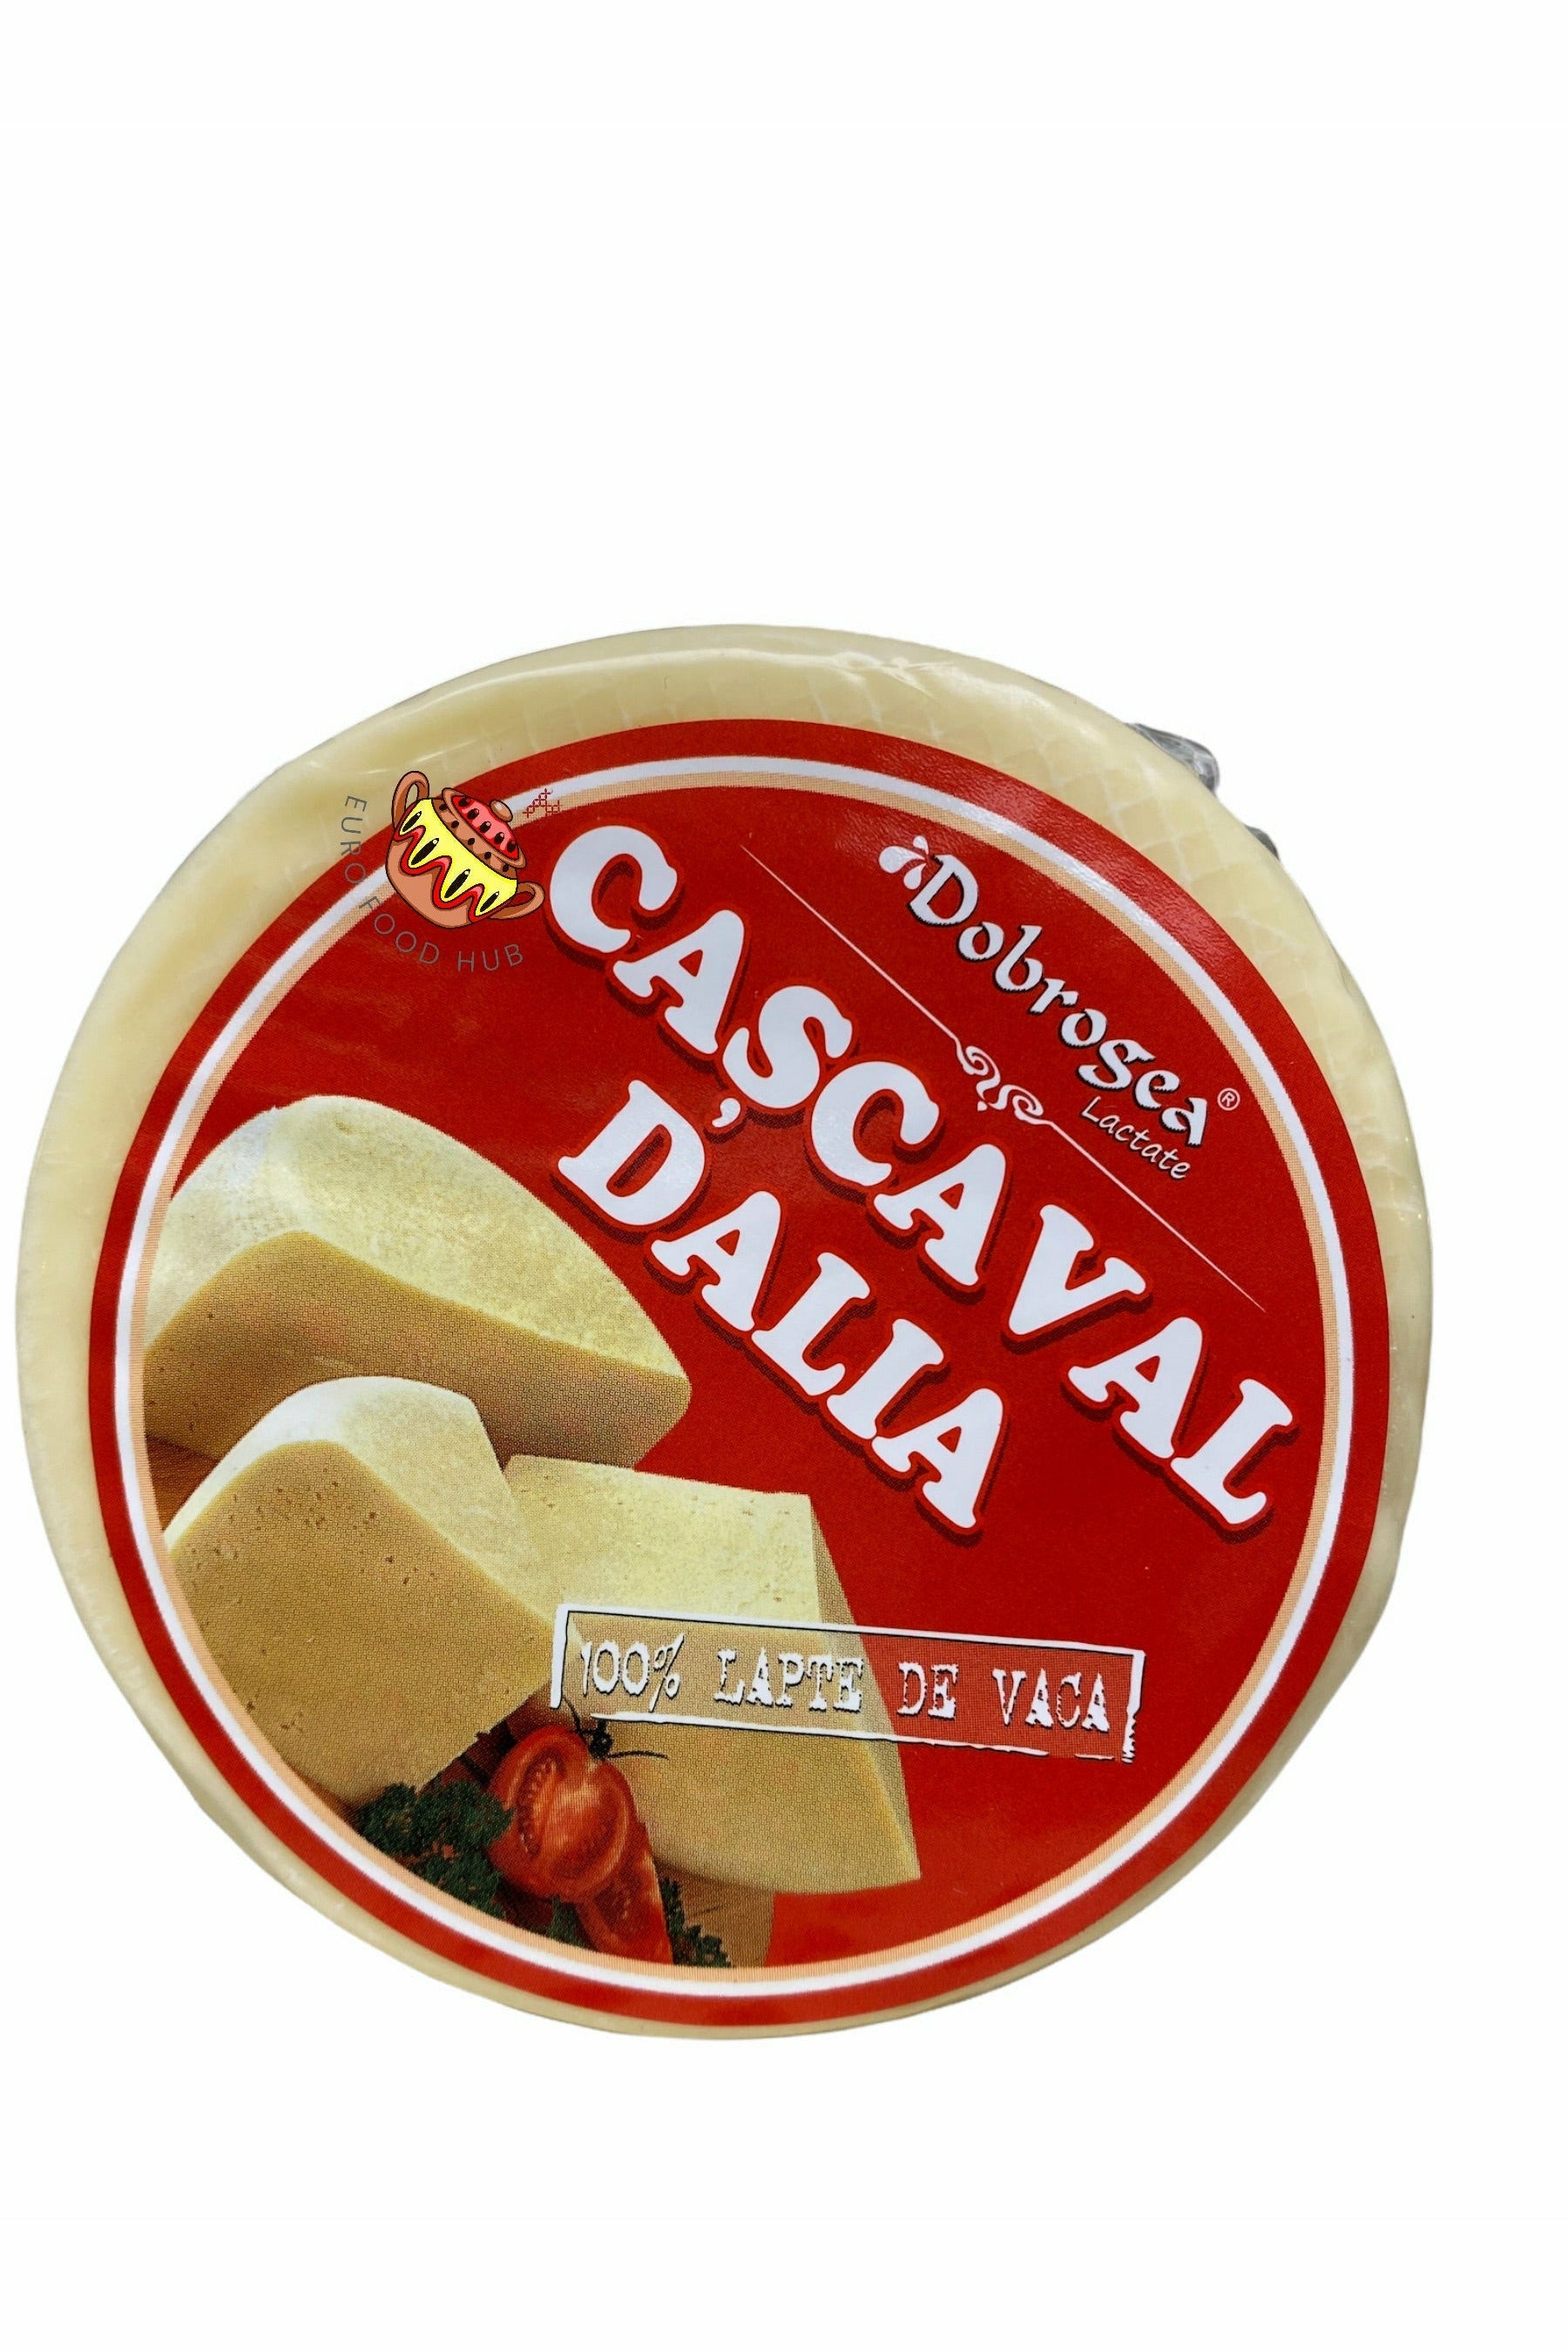 Dobrogea Lactate Cascaval Cheese - DALIA